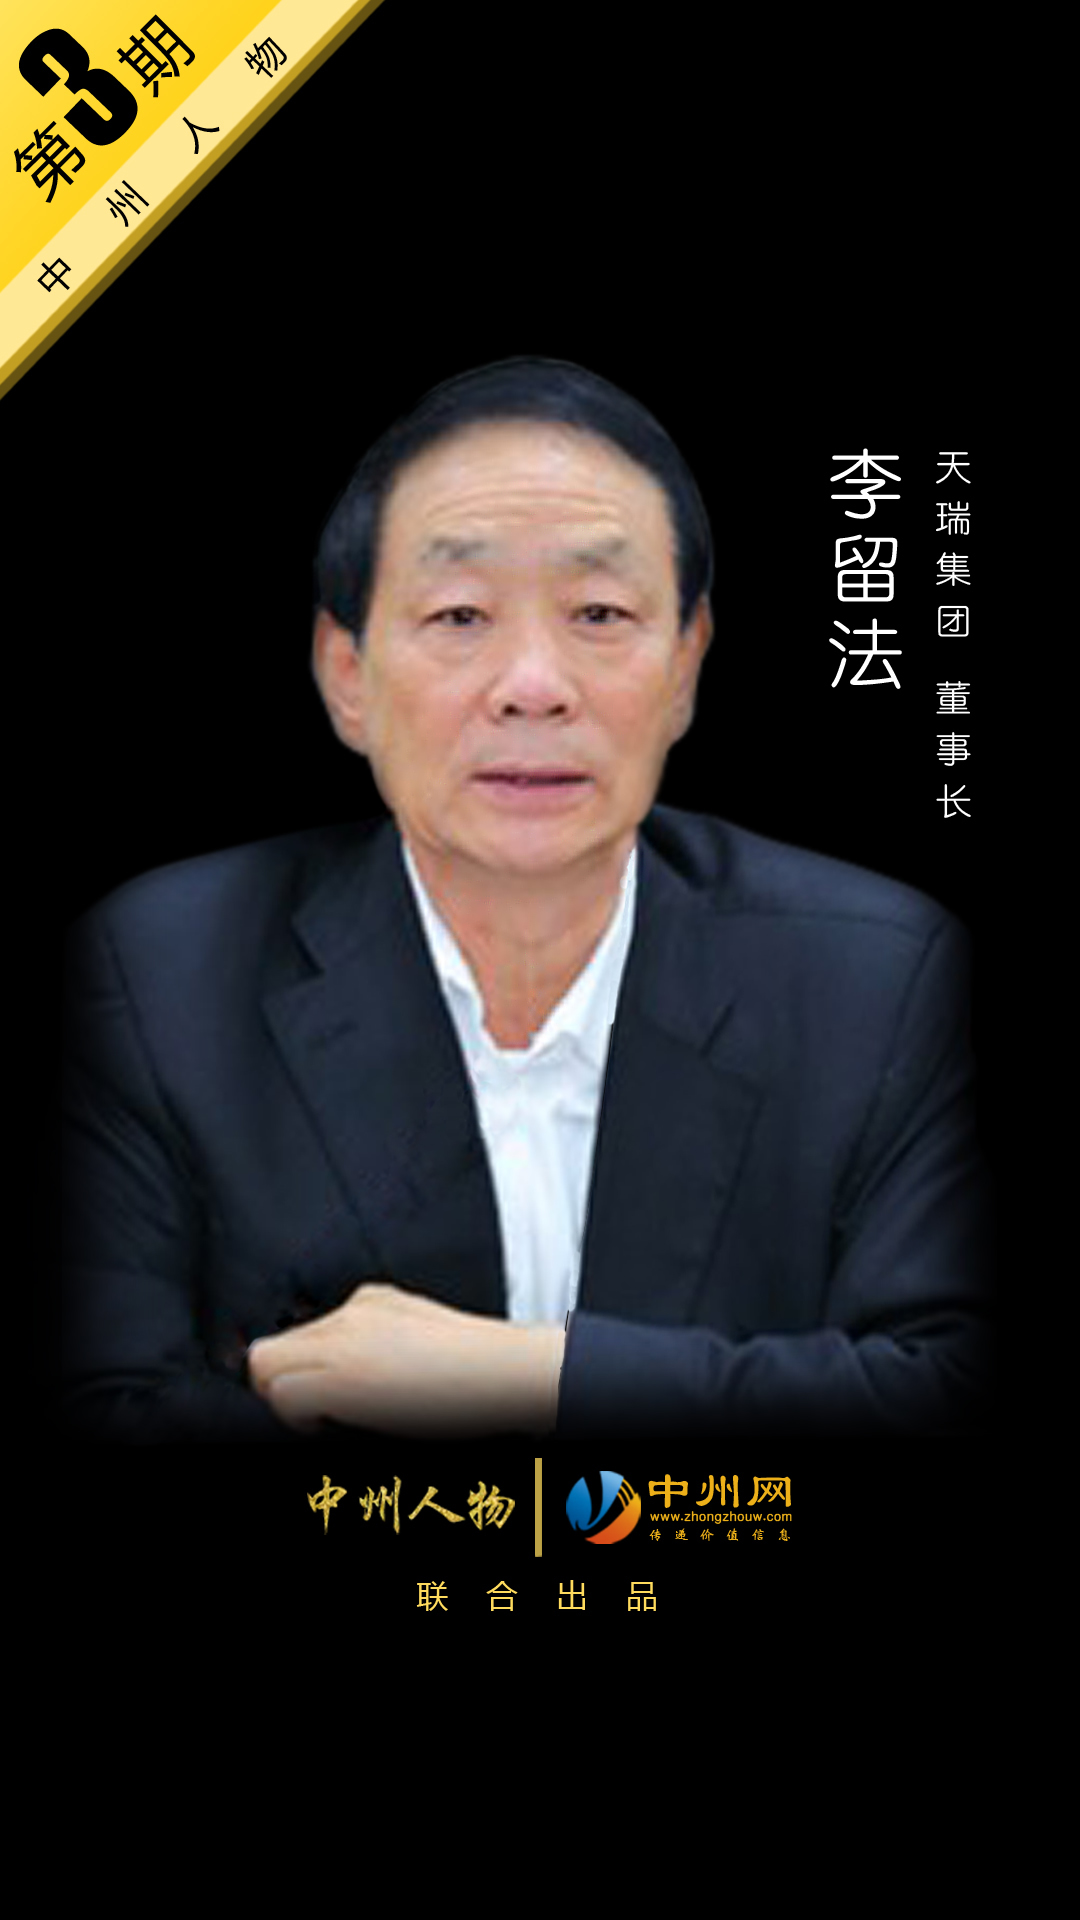 【中州人物第3期】天瑞集团董事长——李留法